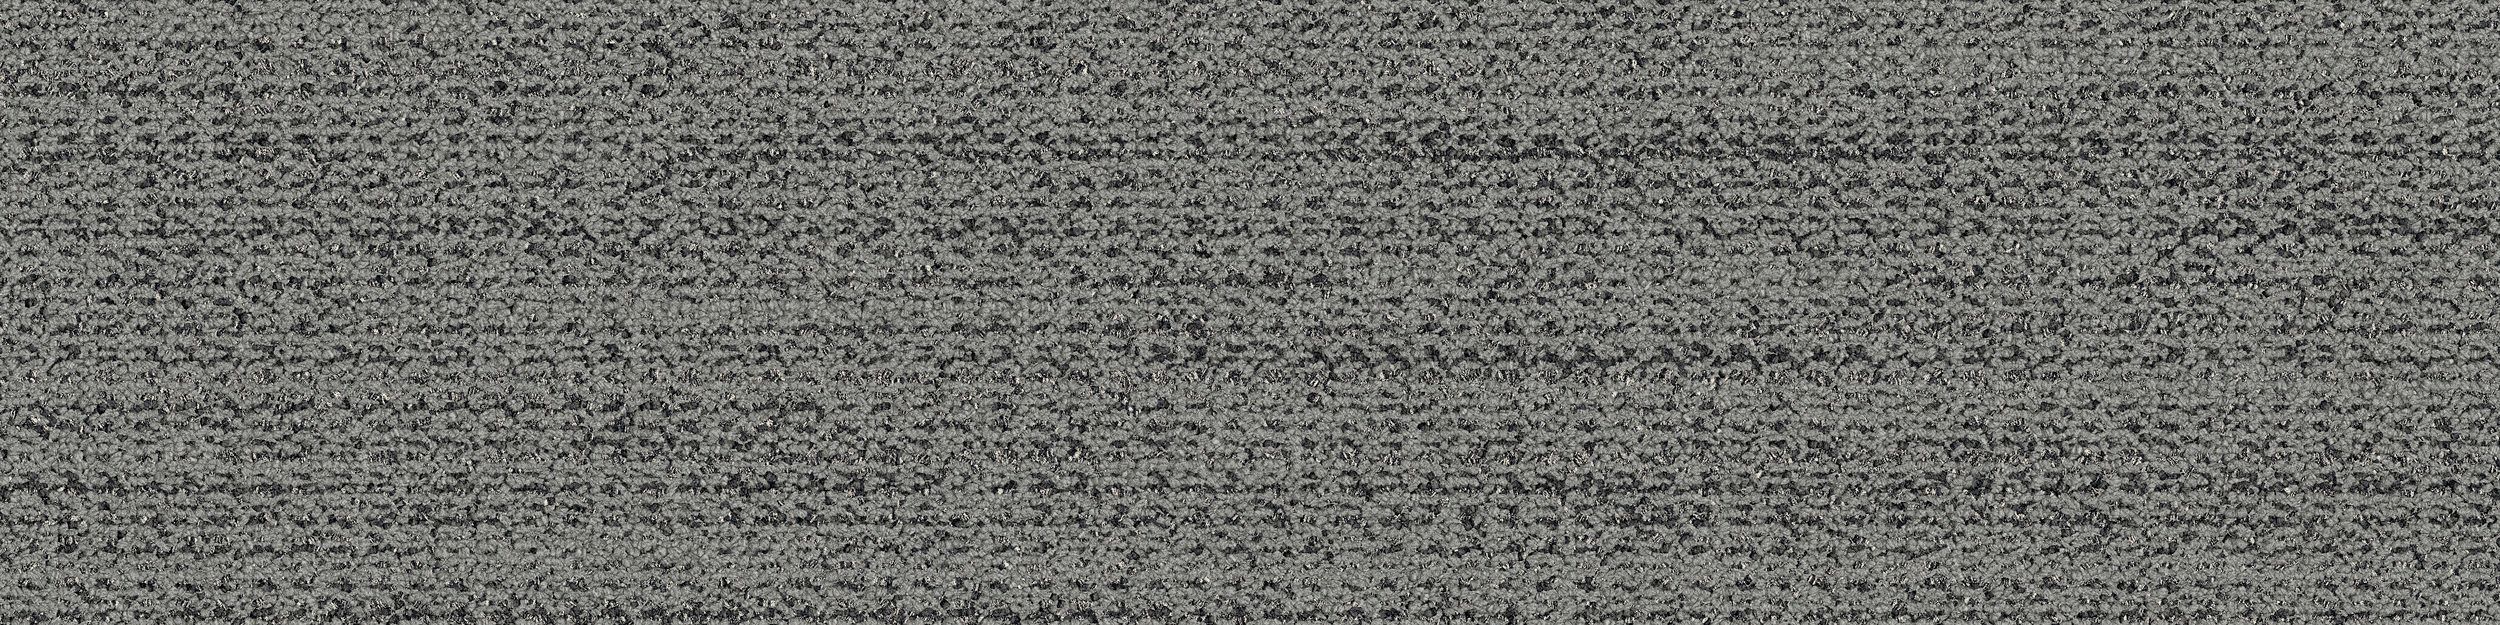 WW870 Carpet Tile In Flannel Weft image number 2